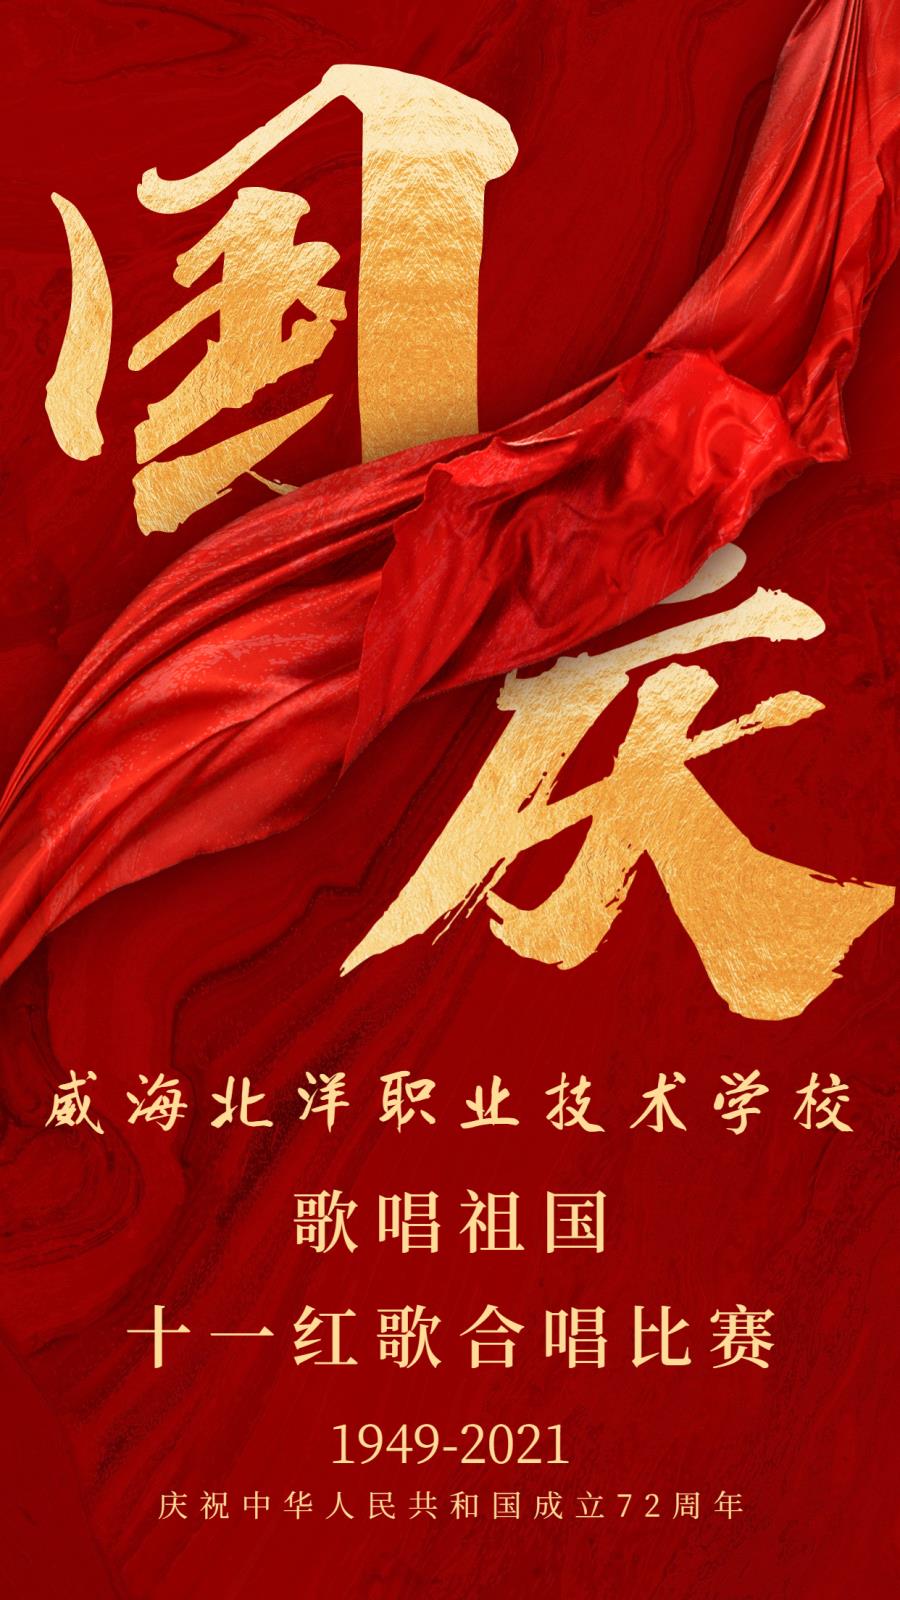 十一国庆节祝福红绸中国风手机海报.jpg